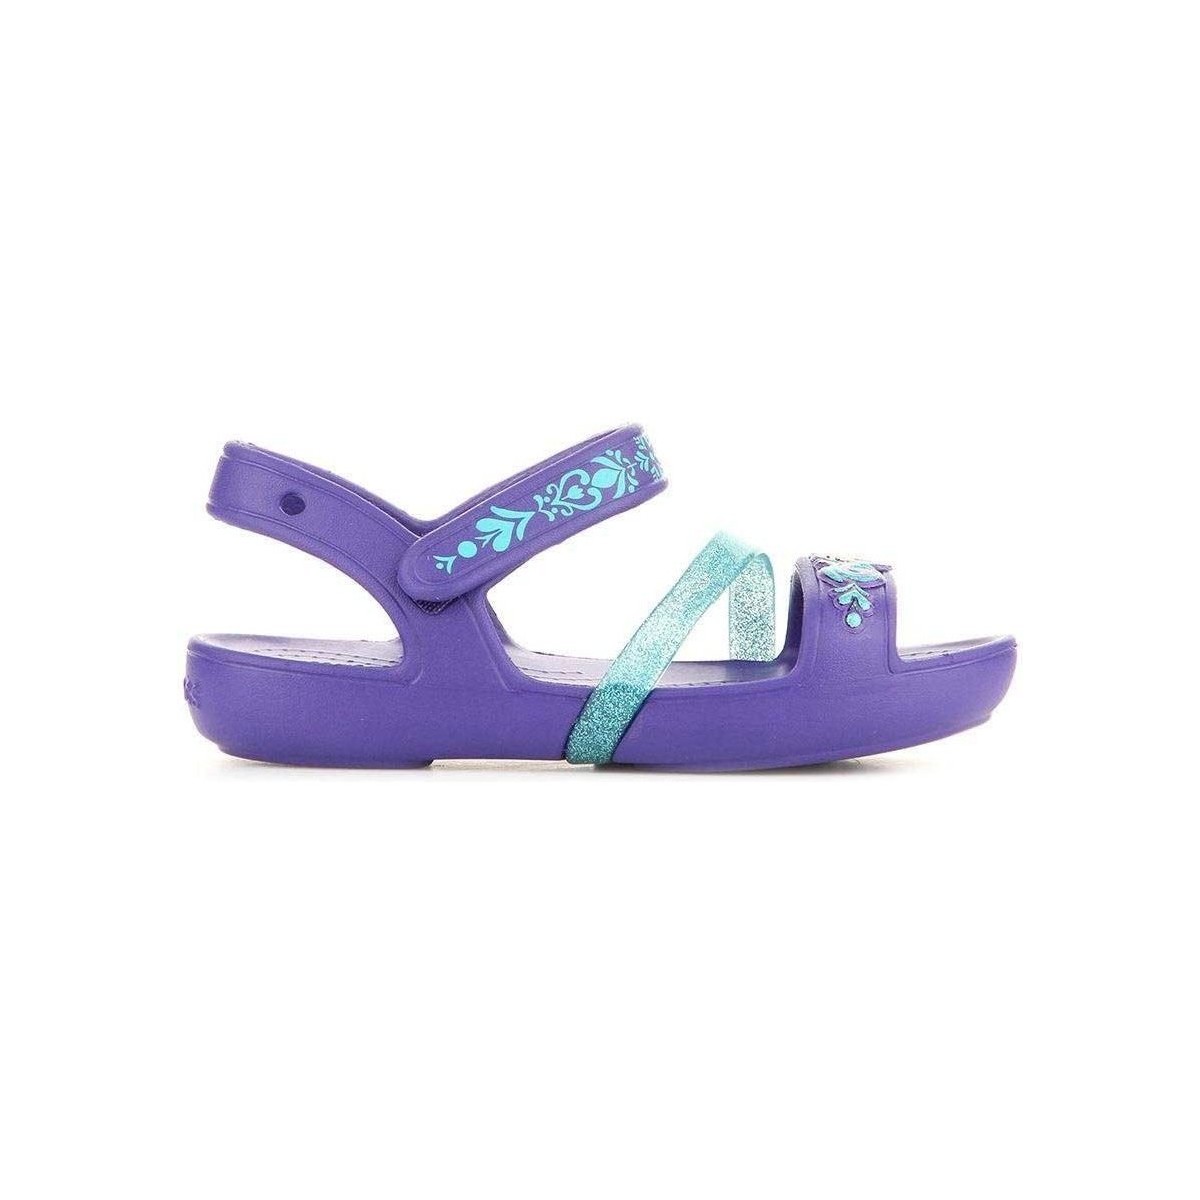 Chaussures Enfant Sandales et Nu-pieds Crocs Line Frozen Sandal 204139-506 Multicolore